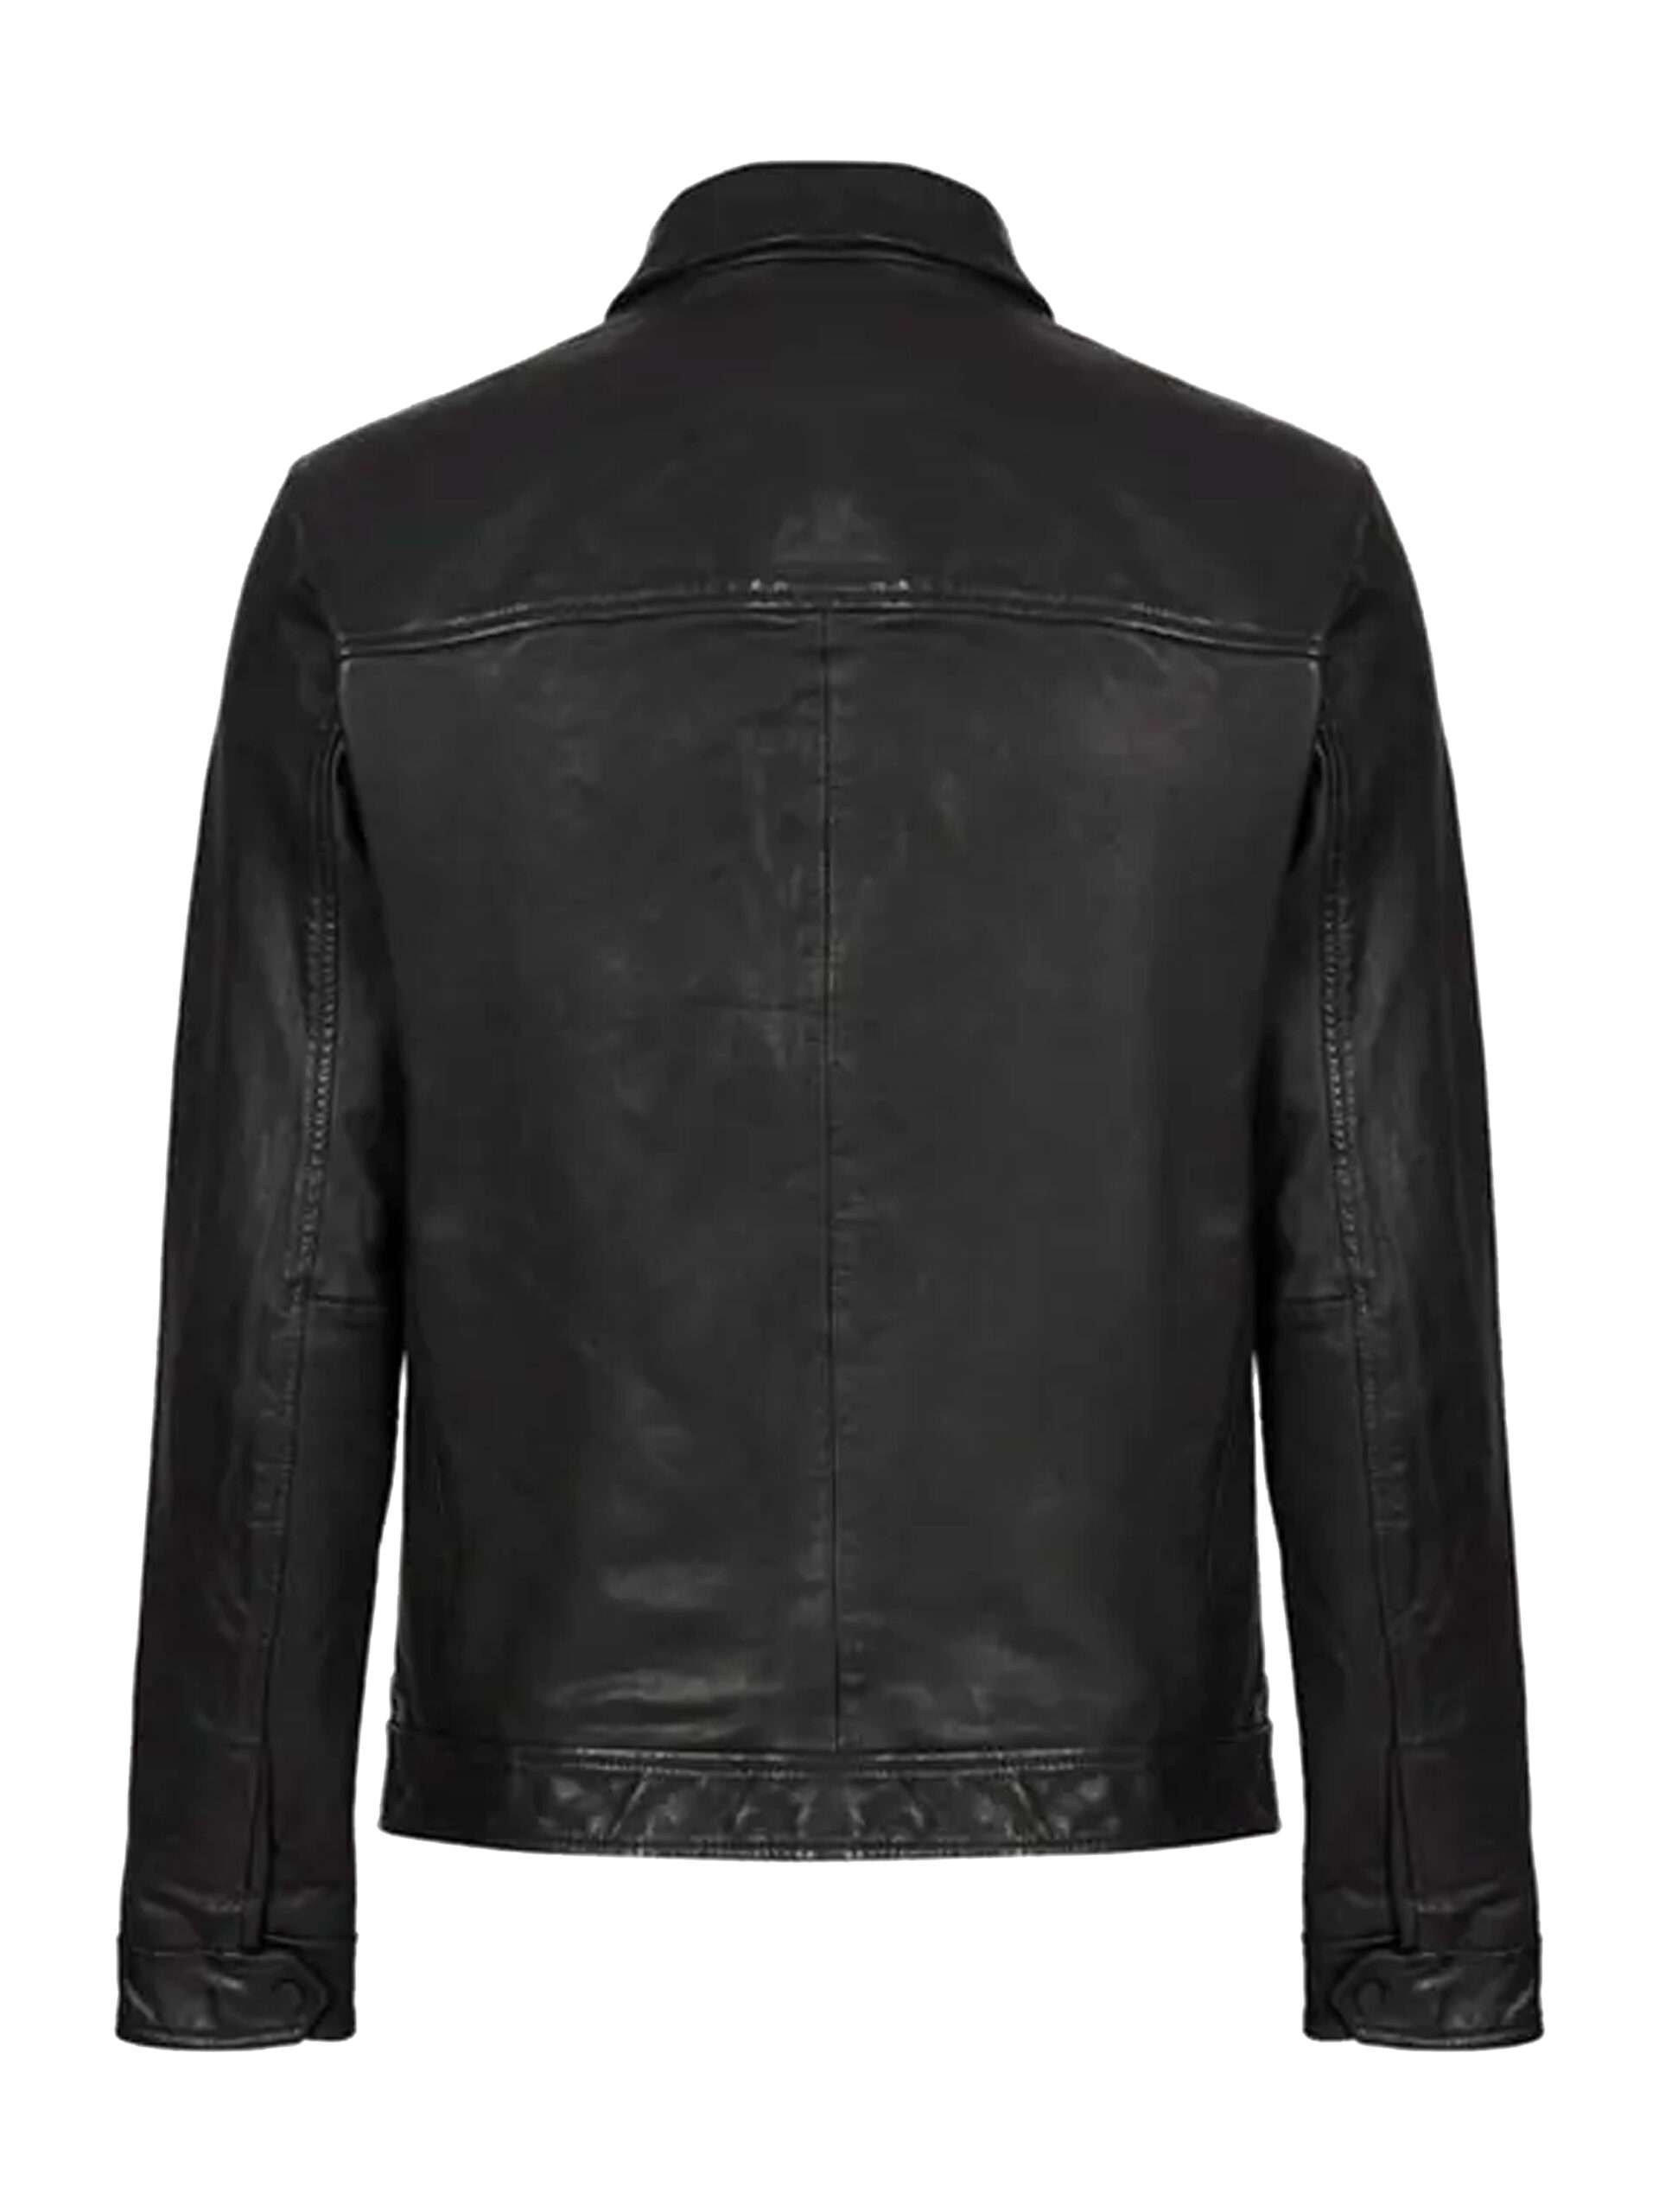 Benjamin Hollingsworth Virgin River S04 Black Leather Jacket